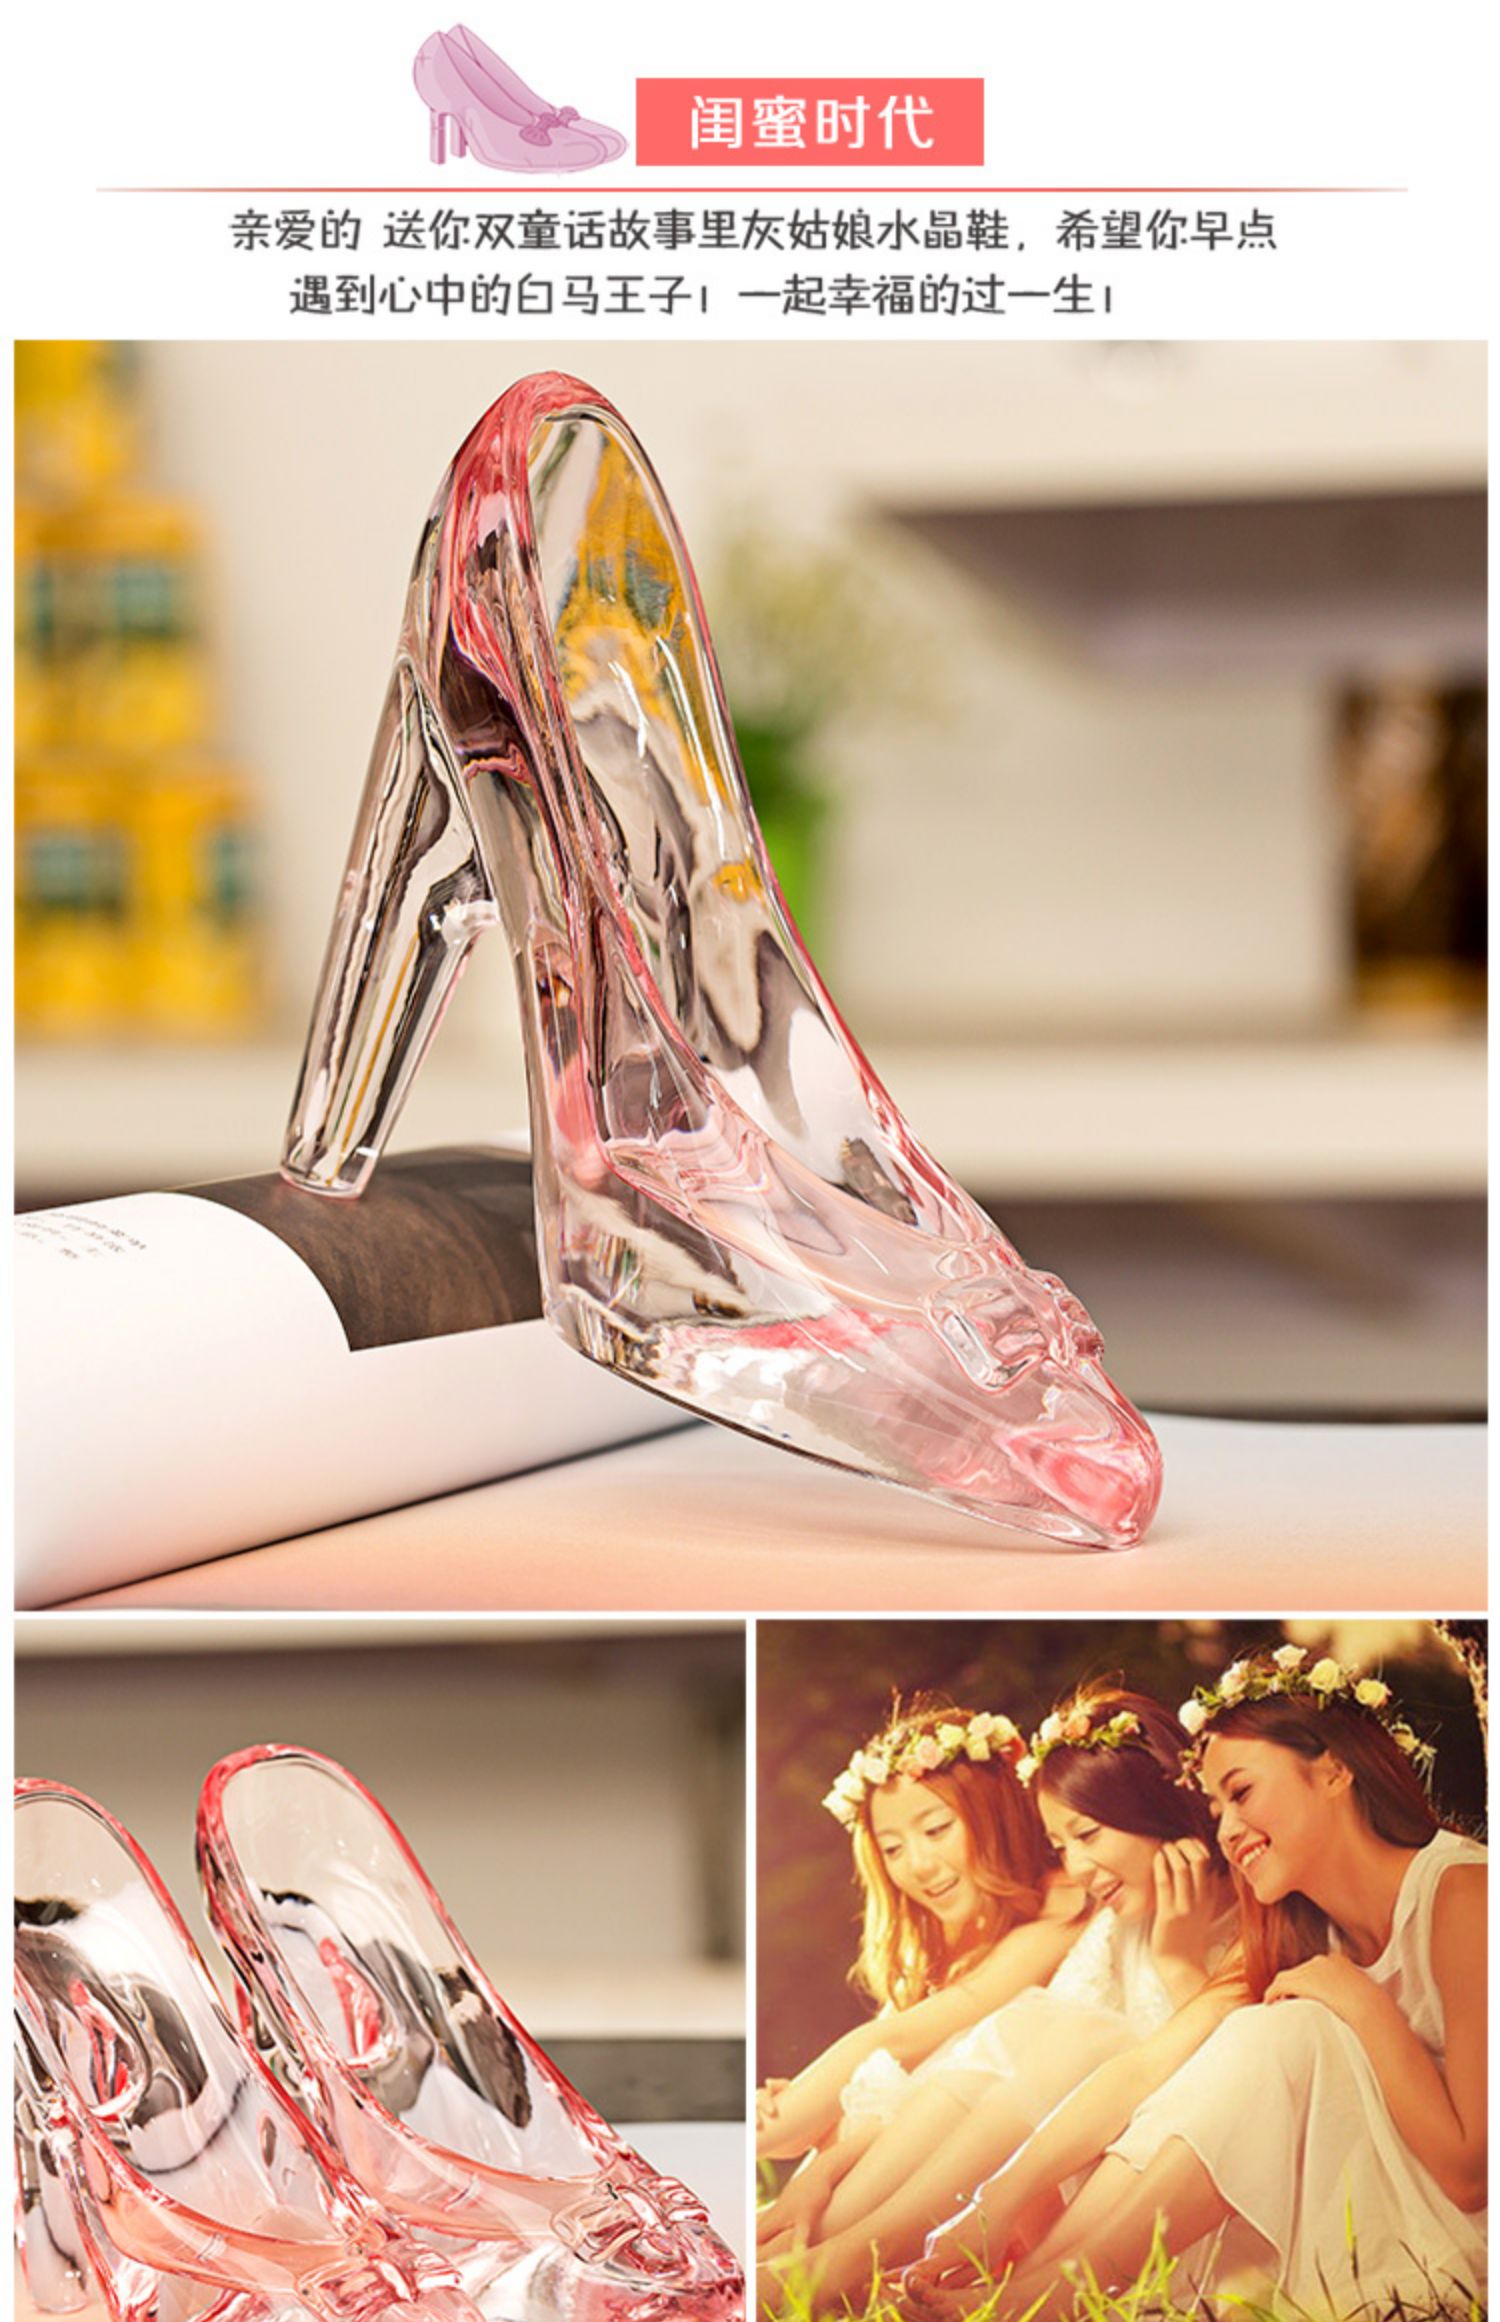 灰姑娘的水晶鞋摆件公主透明玻璃鞋送女友女生生日礼物结婚工艺品